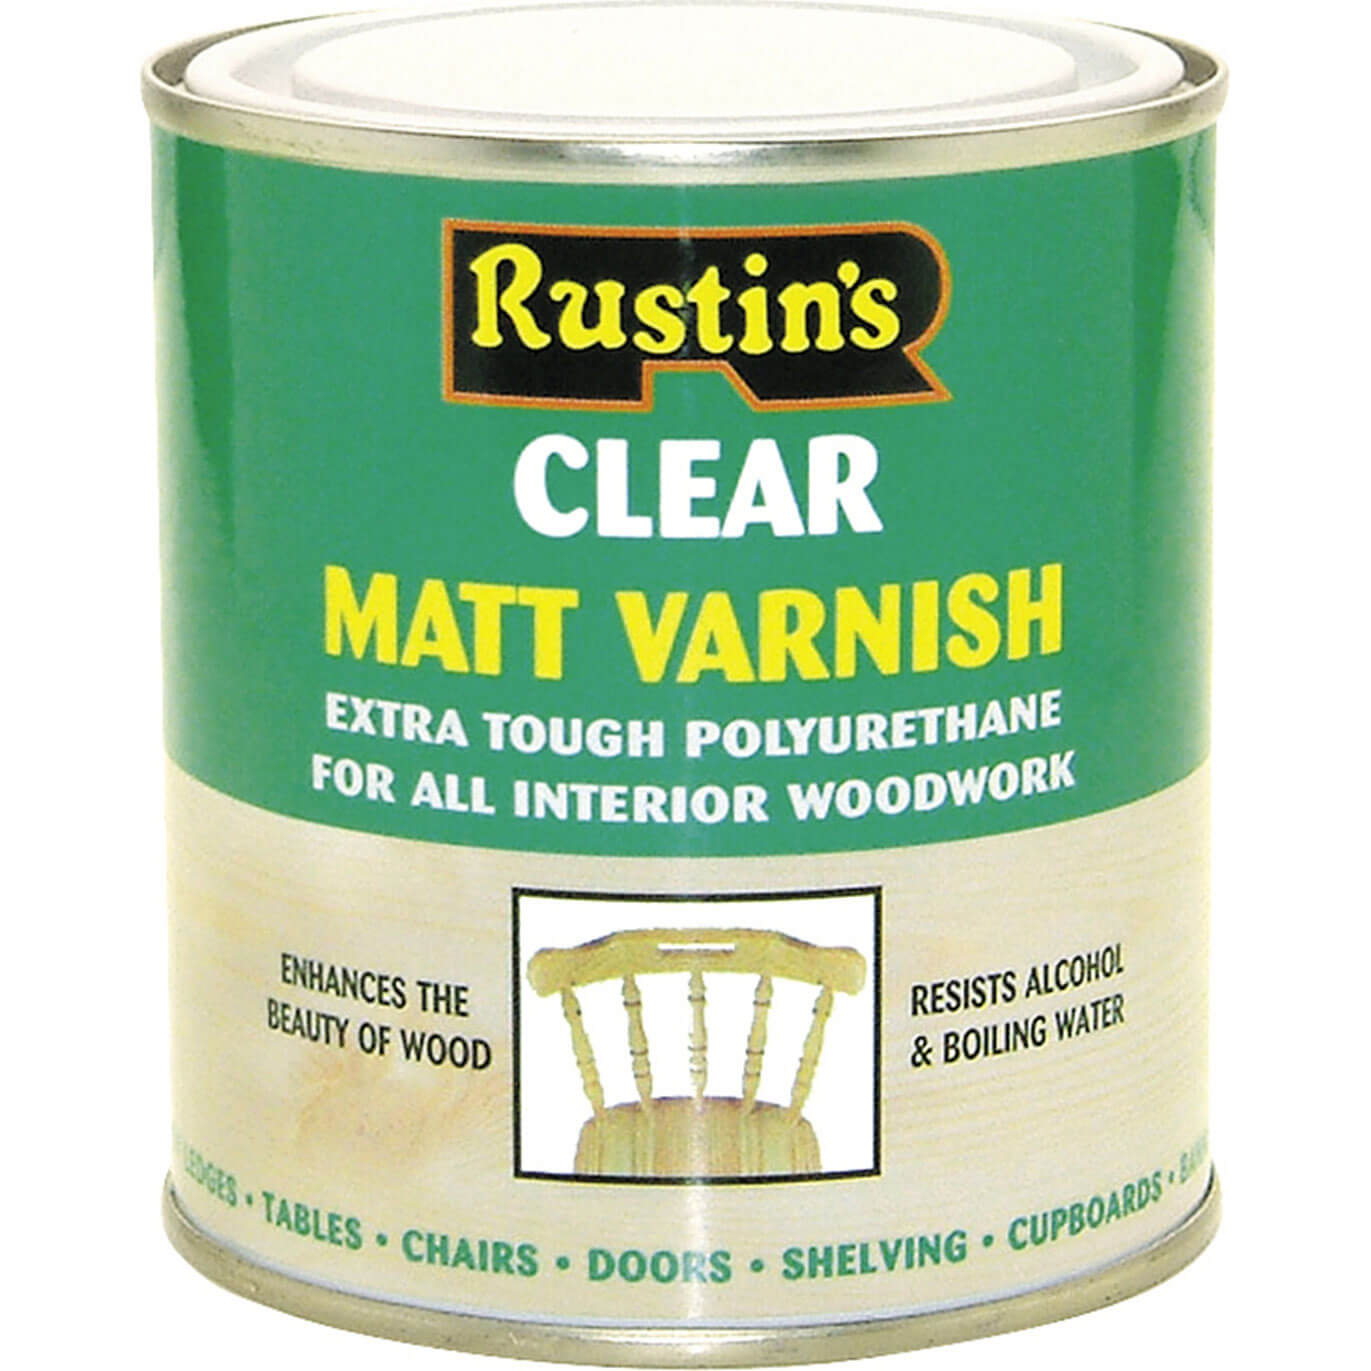 Rustins Polyurethane Varnish Matt Clear 5 Litre